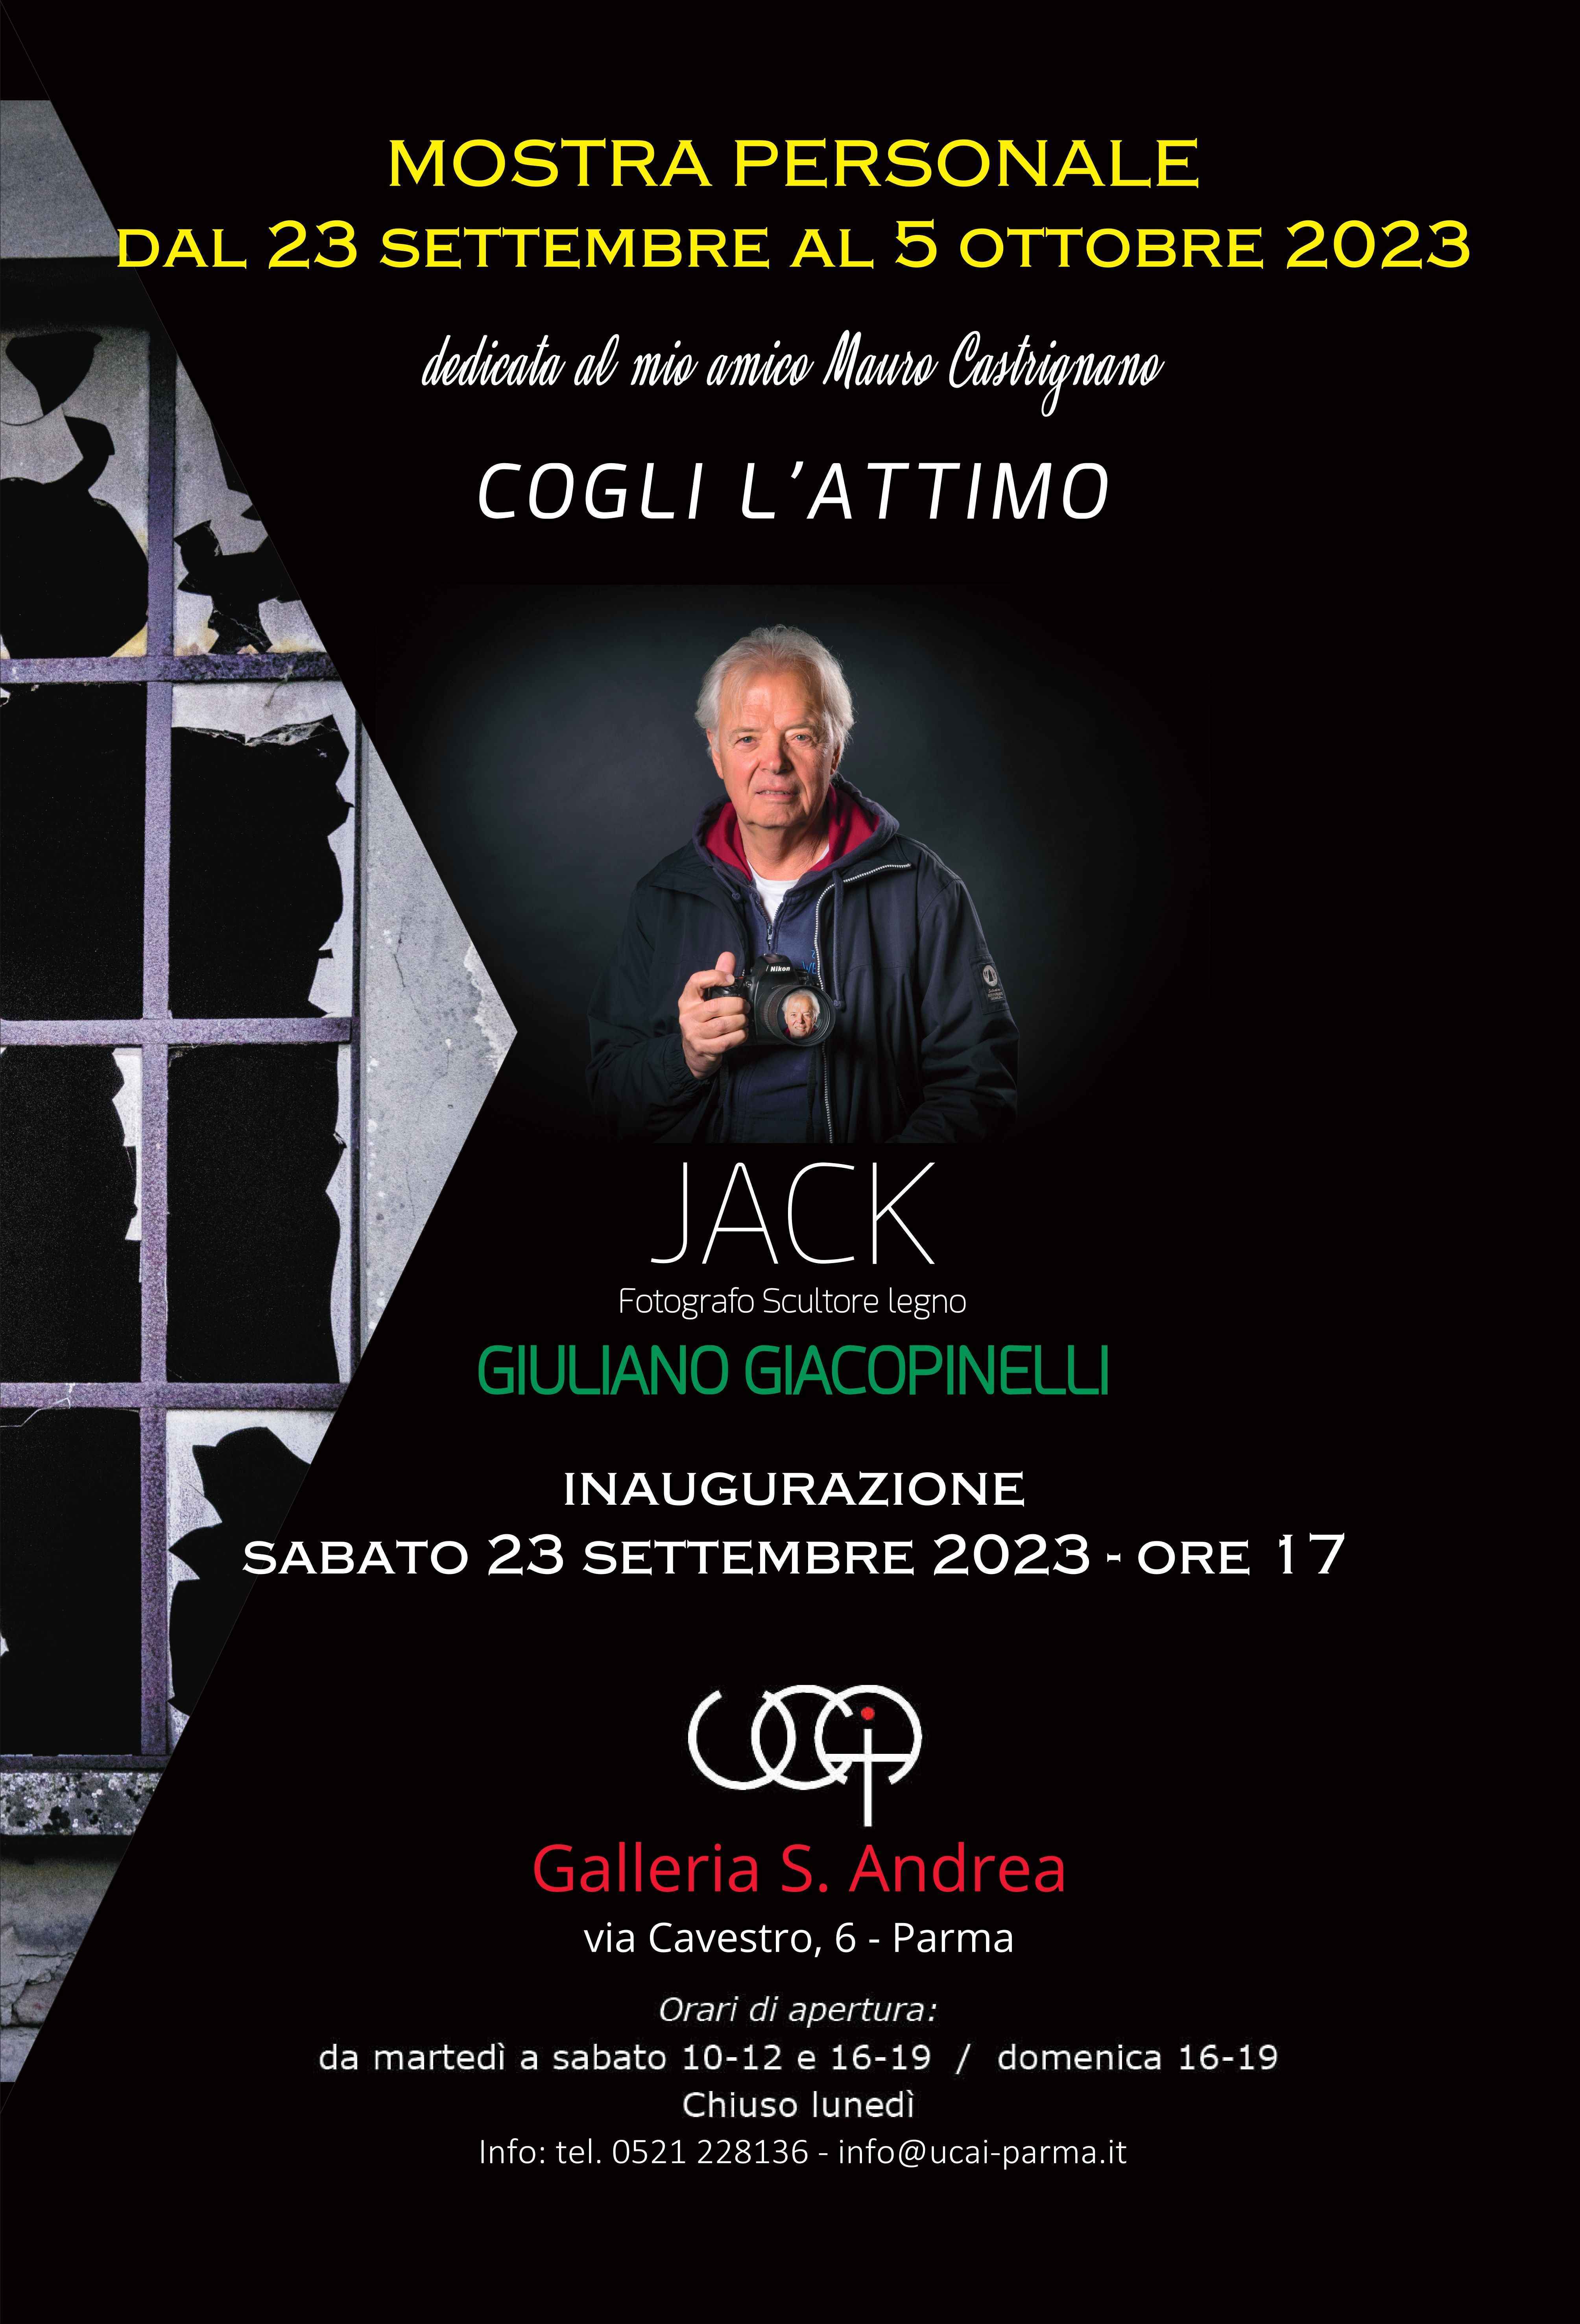 Personale fotografica di Giuliano Giacopinelli dal titolo "Cogli l'attimo" alla Galleria S. Andrea